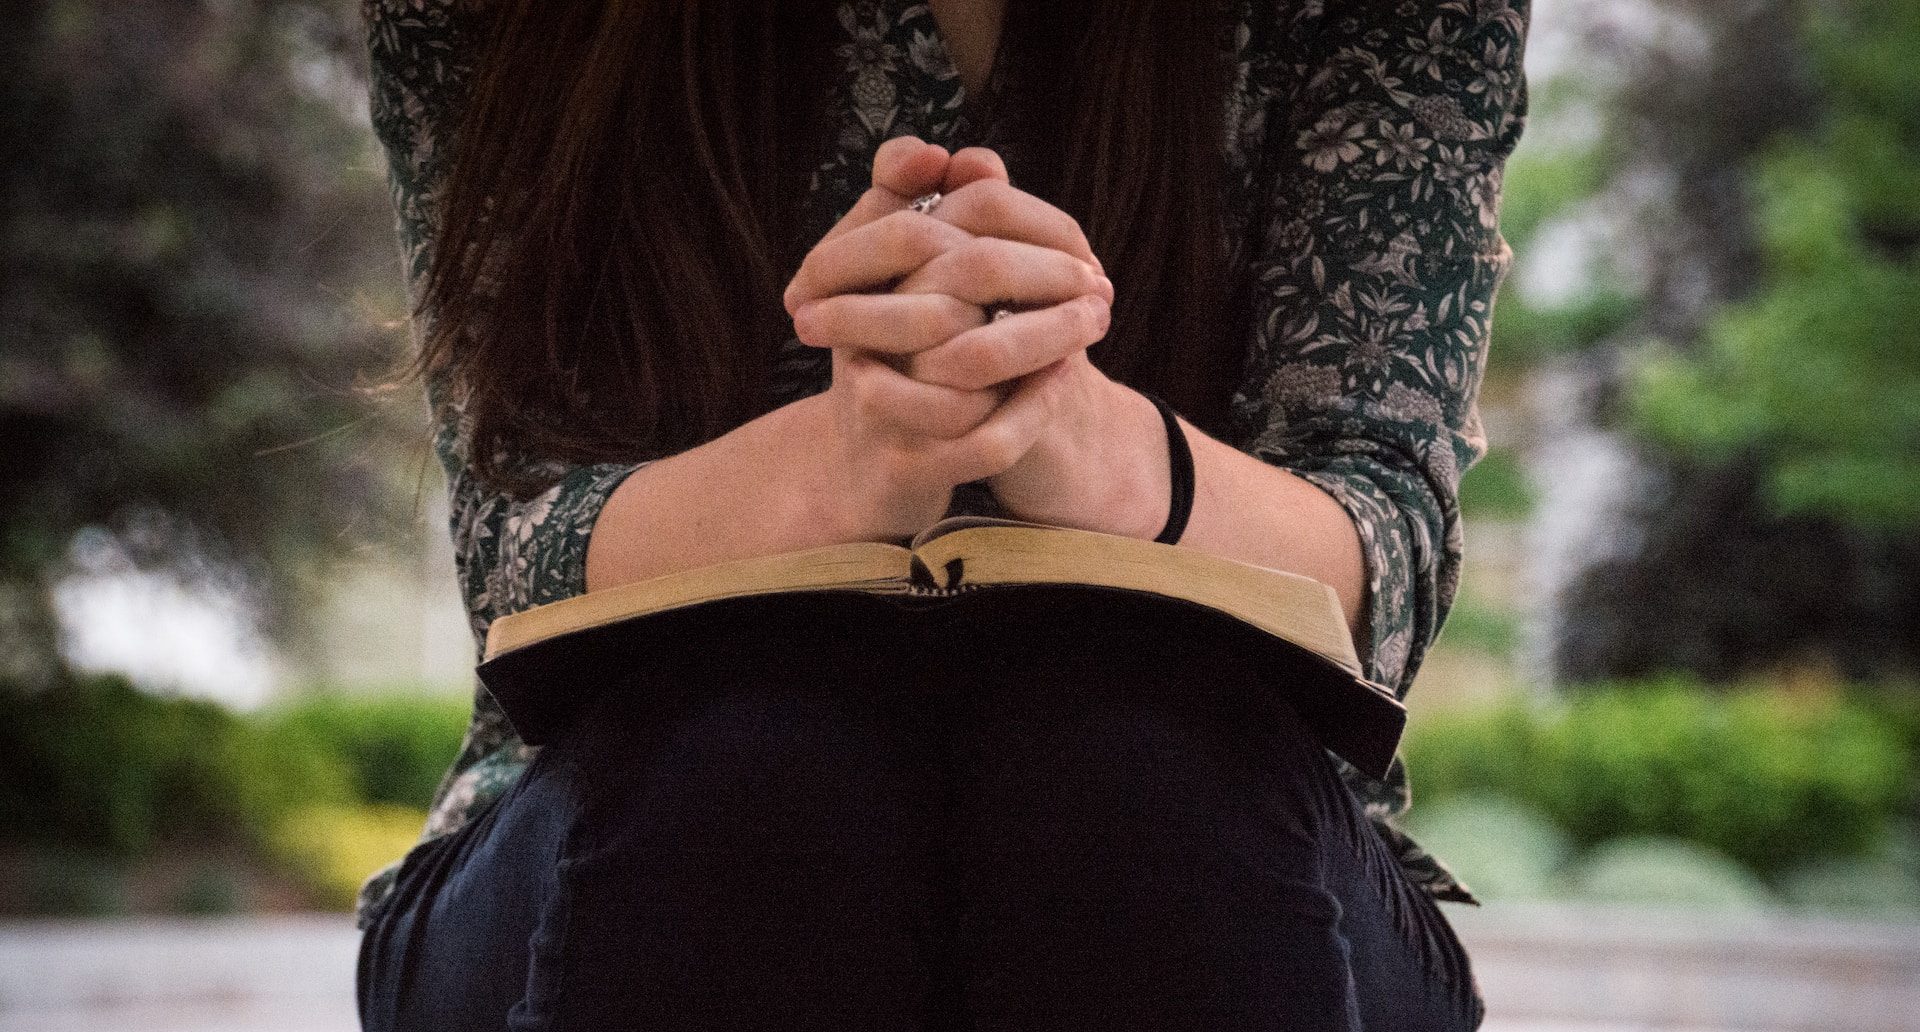 Woman praying with Bible